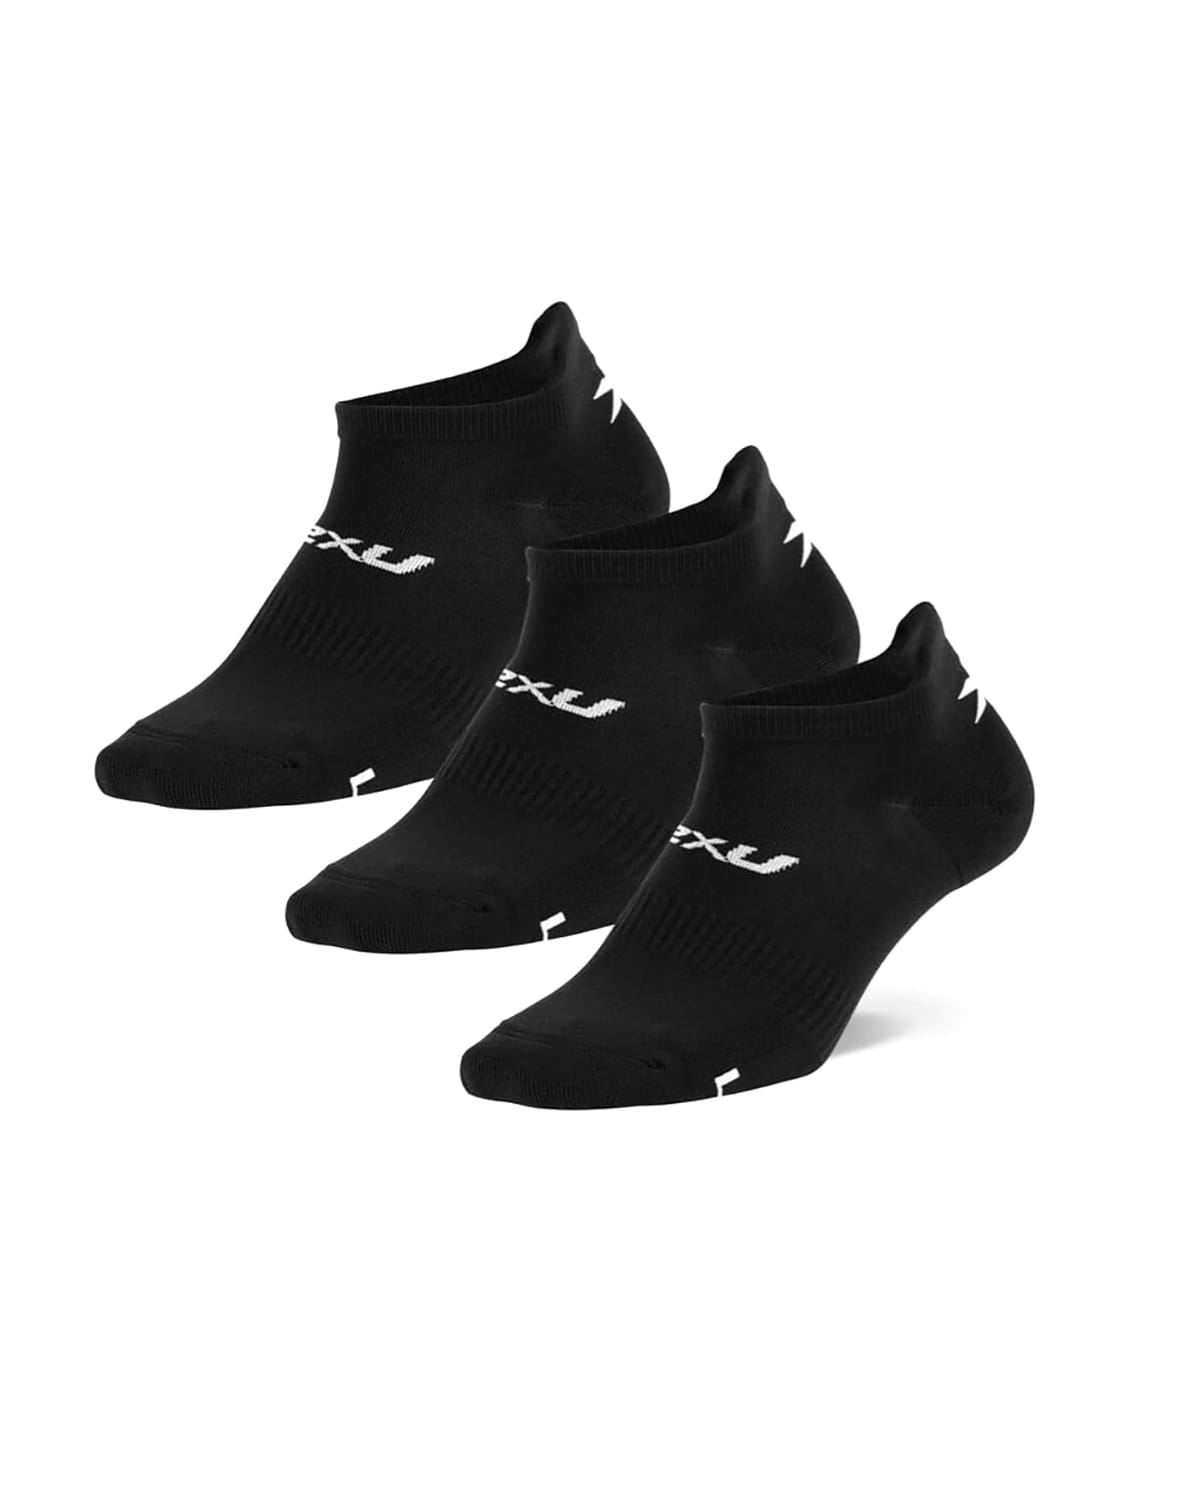 2XU Ankle Socks 3 Pack-U Black/White